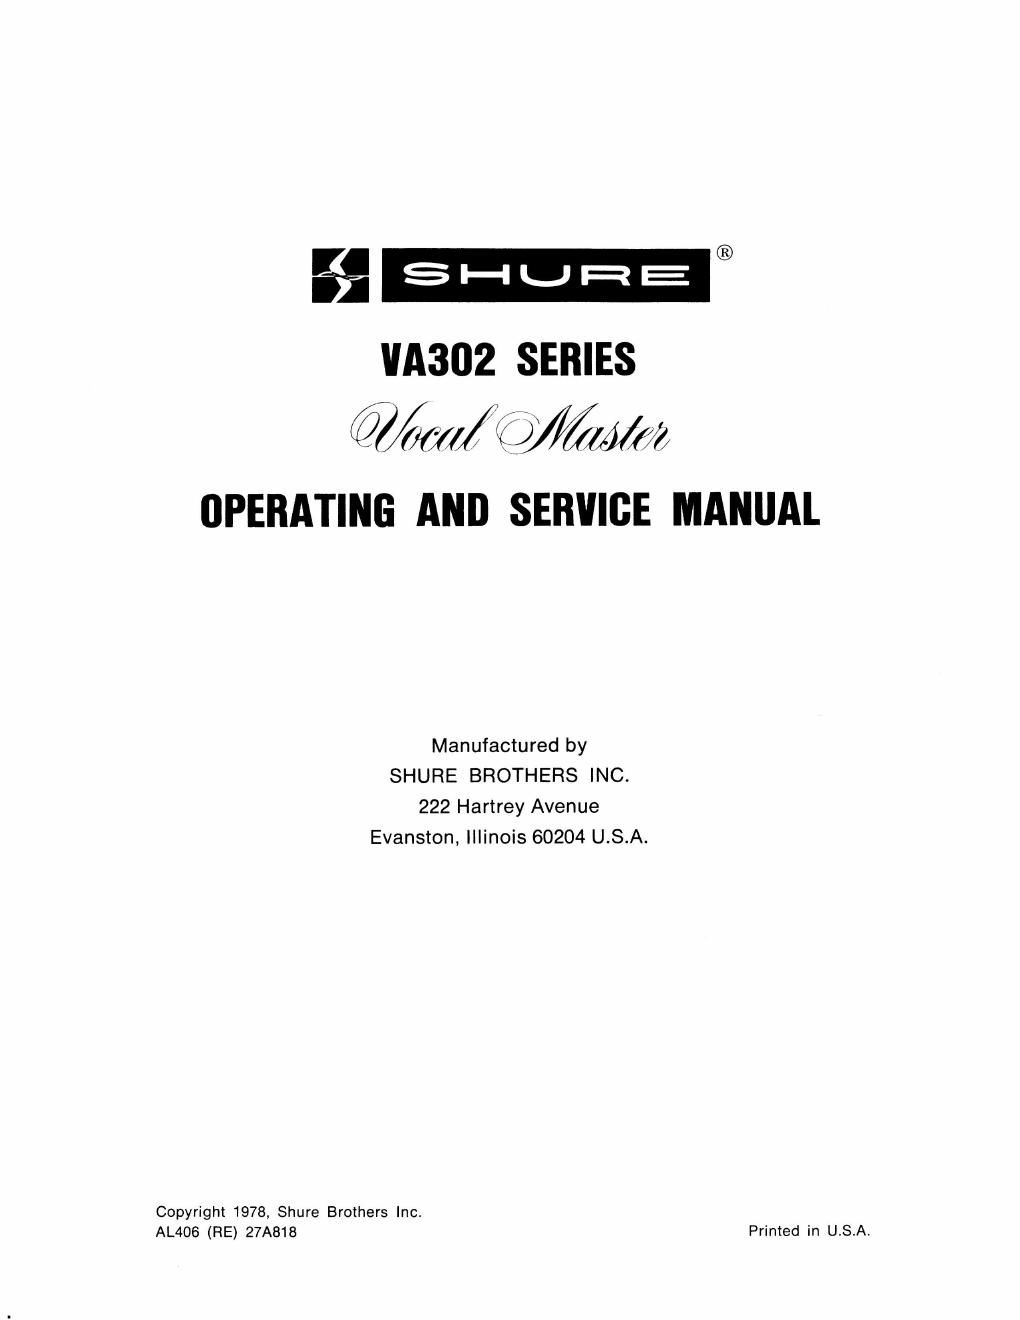 shure va302 owners manual